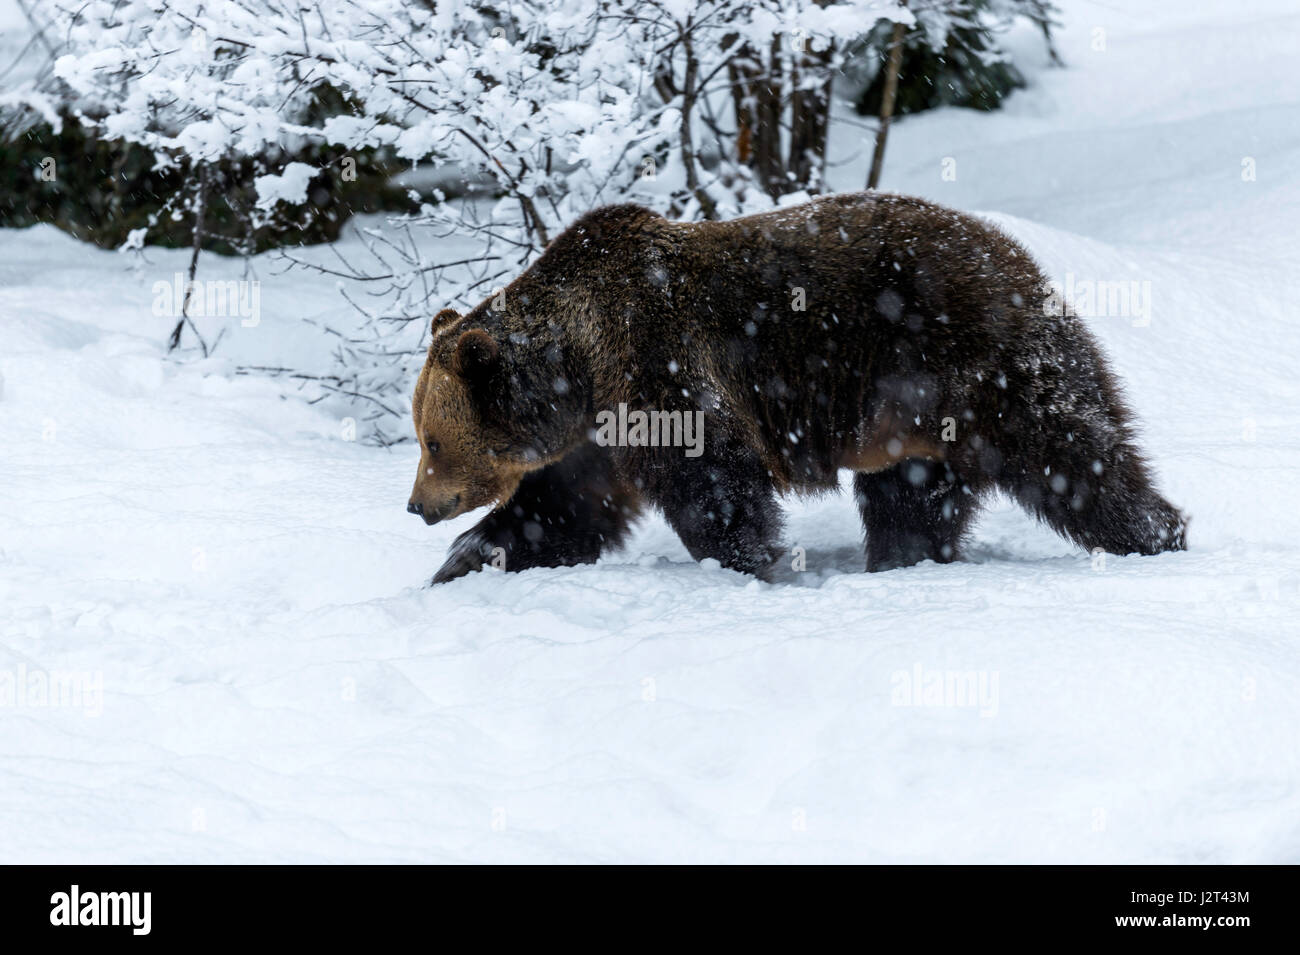 Solo para mujeres adultas Euroasiática de oso pardo (Ursus arctos) serpenteante en una tormenta de nieve en invierno. Foto de stock